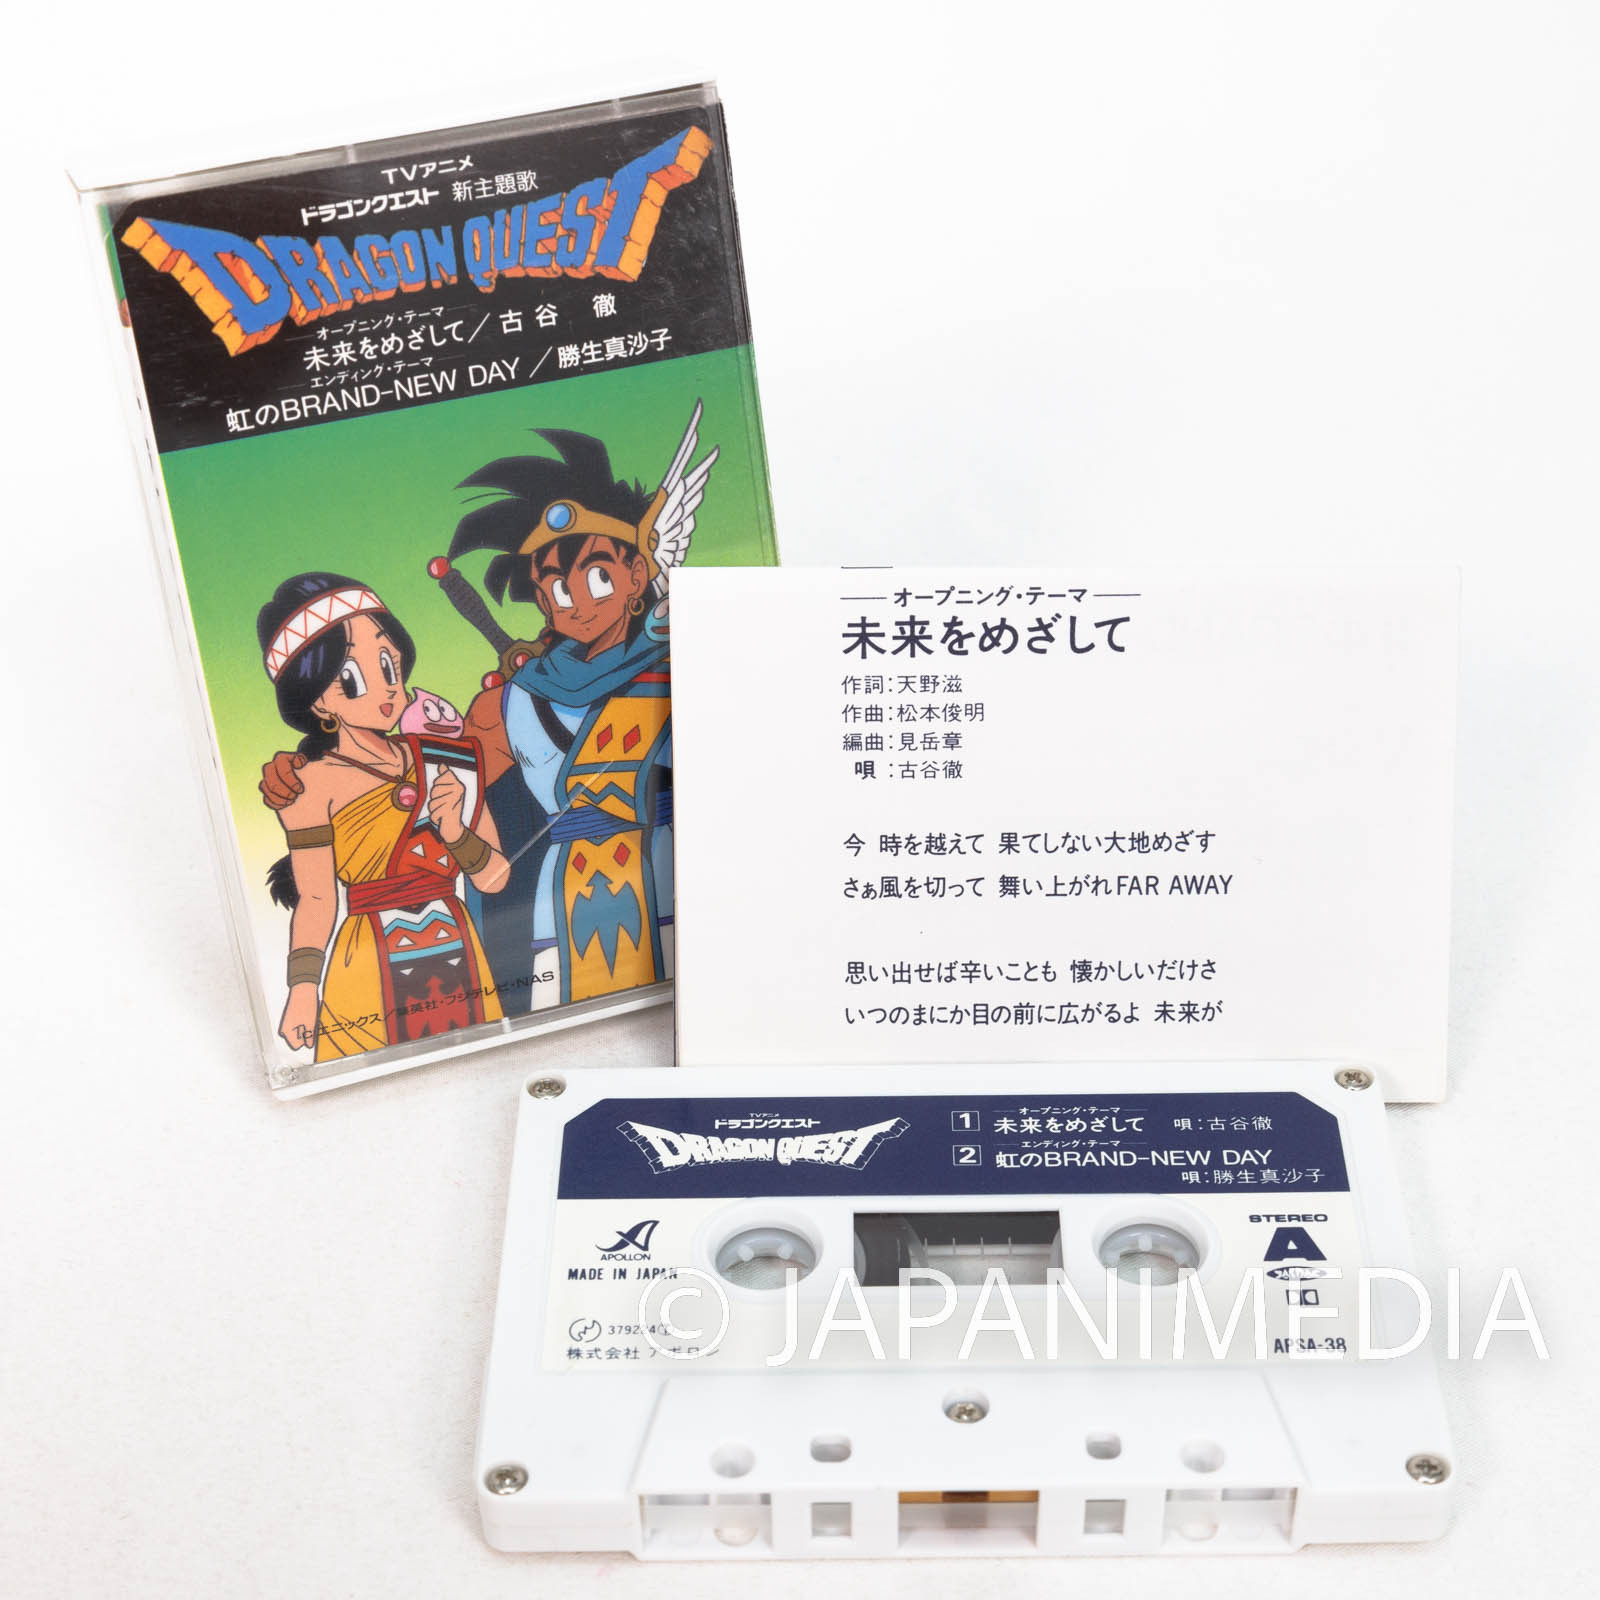 Anime-style Cassette Tape - Etsy